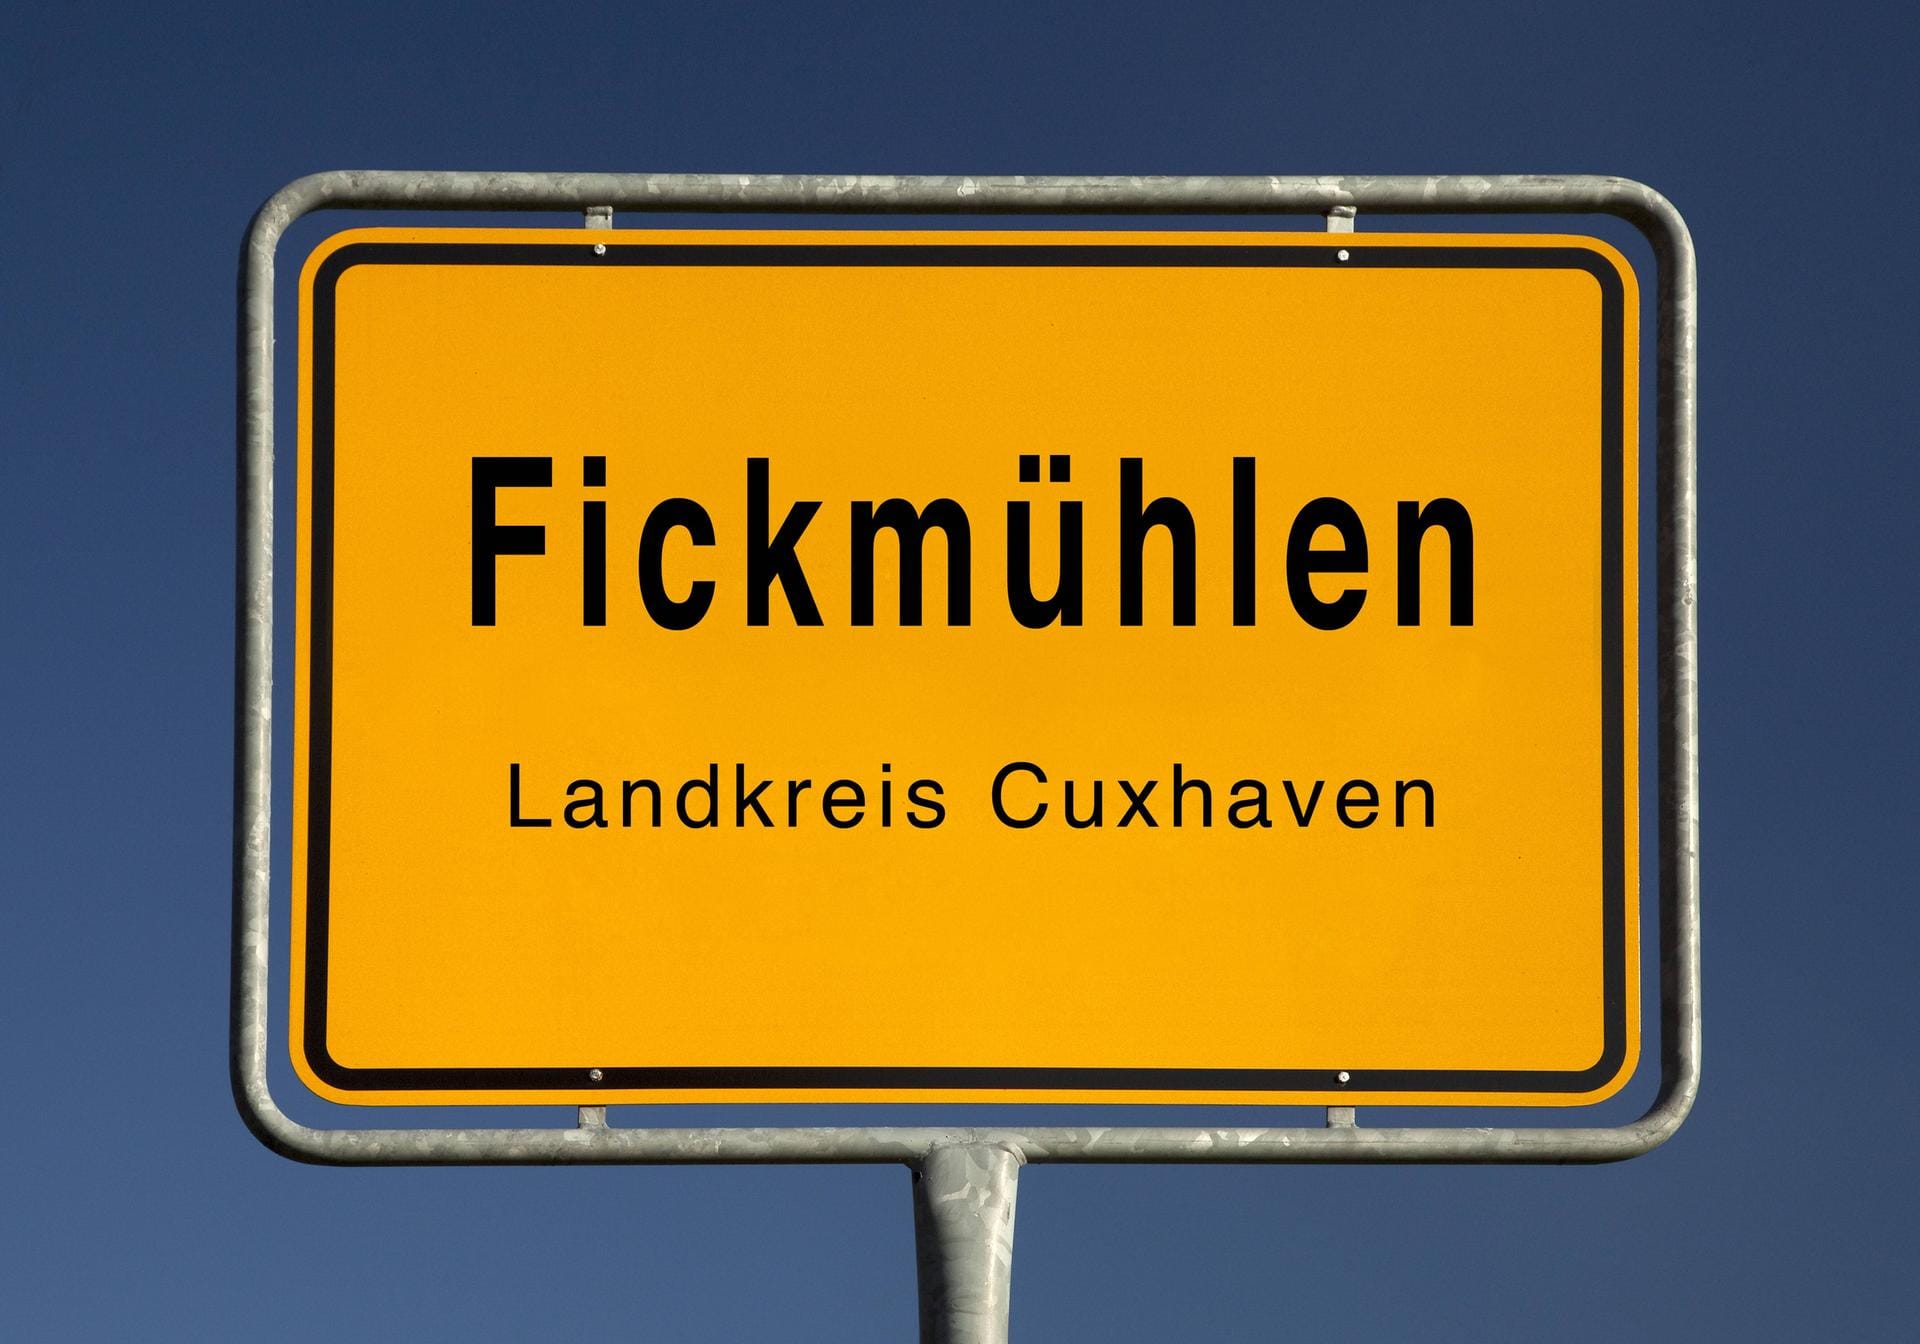 Im niedersächsischen Landkreis Cuxhaven gibt es einen Ort namens Fickmühlen.